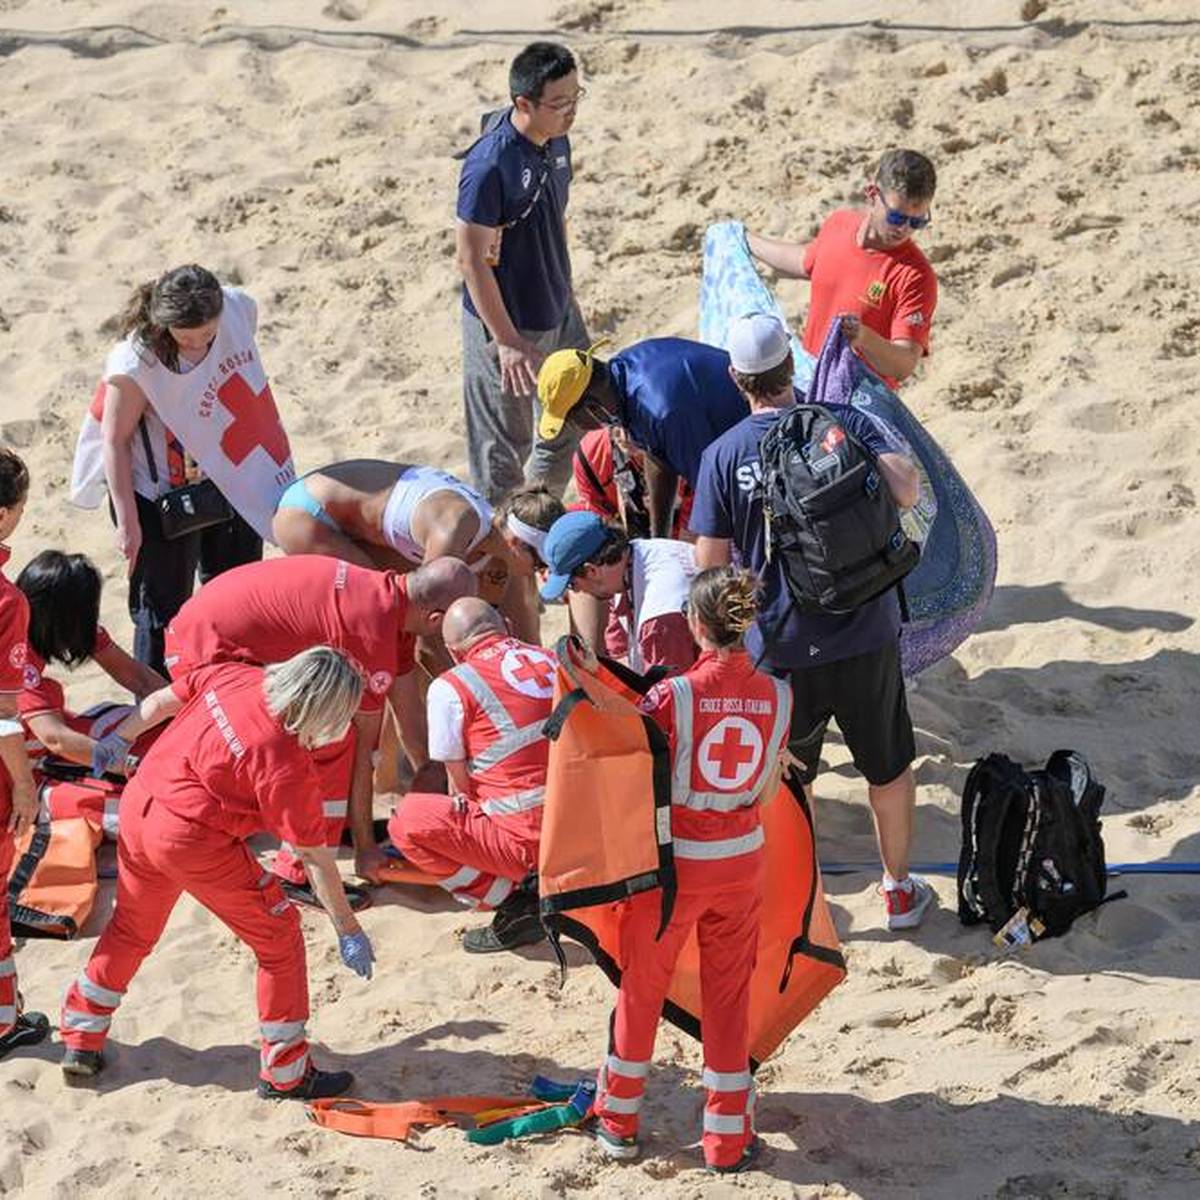 Die schwere Verletzung von Joana Heidrich beschäftigt die Beachvolleyball-Welt weiterhin. Nun macht ihre Teamkollegin Anouk Vergé-Dépré den Organisatoren schwere Vorwürfe.